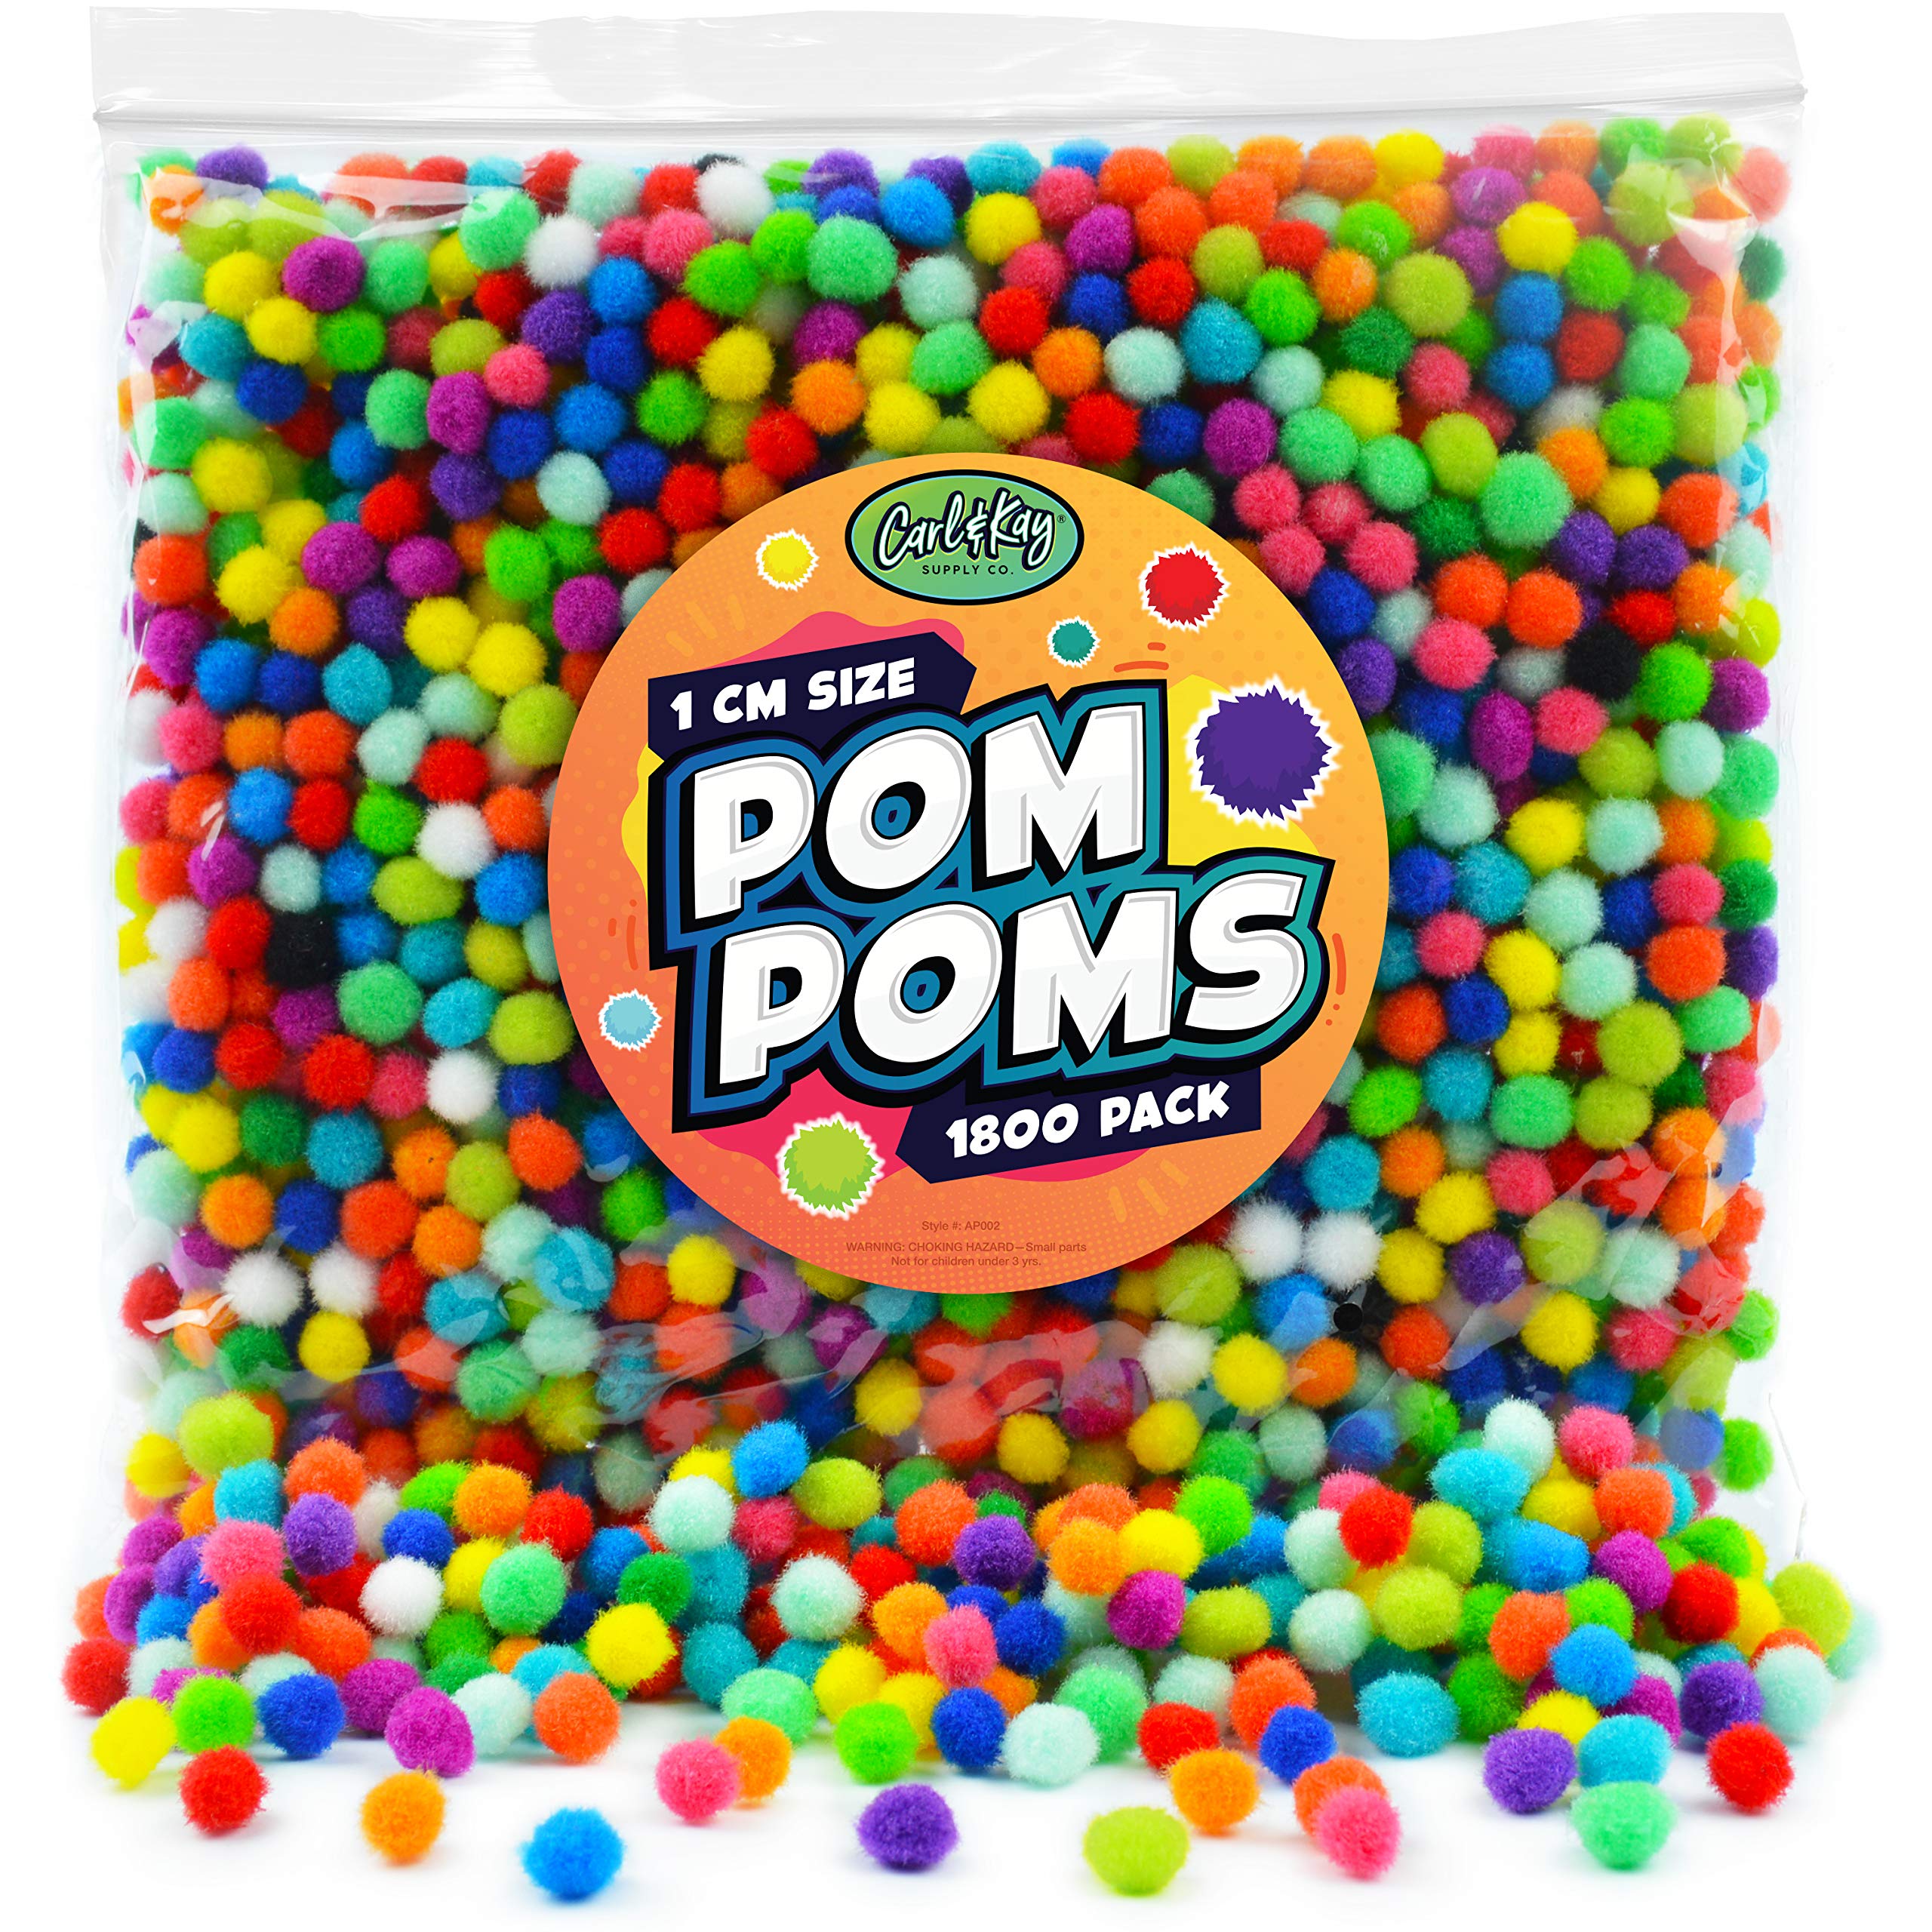 ERINGOGO 1000 Pcs Cotton Ball Fuzzy Pom-pom Mini Pom Poms for Crafts Small  Pom Pom Tiny Pom Pom Ball Colored Pompoms Handmade Puff Balls Artificial